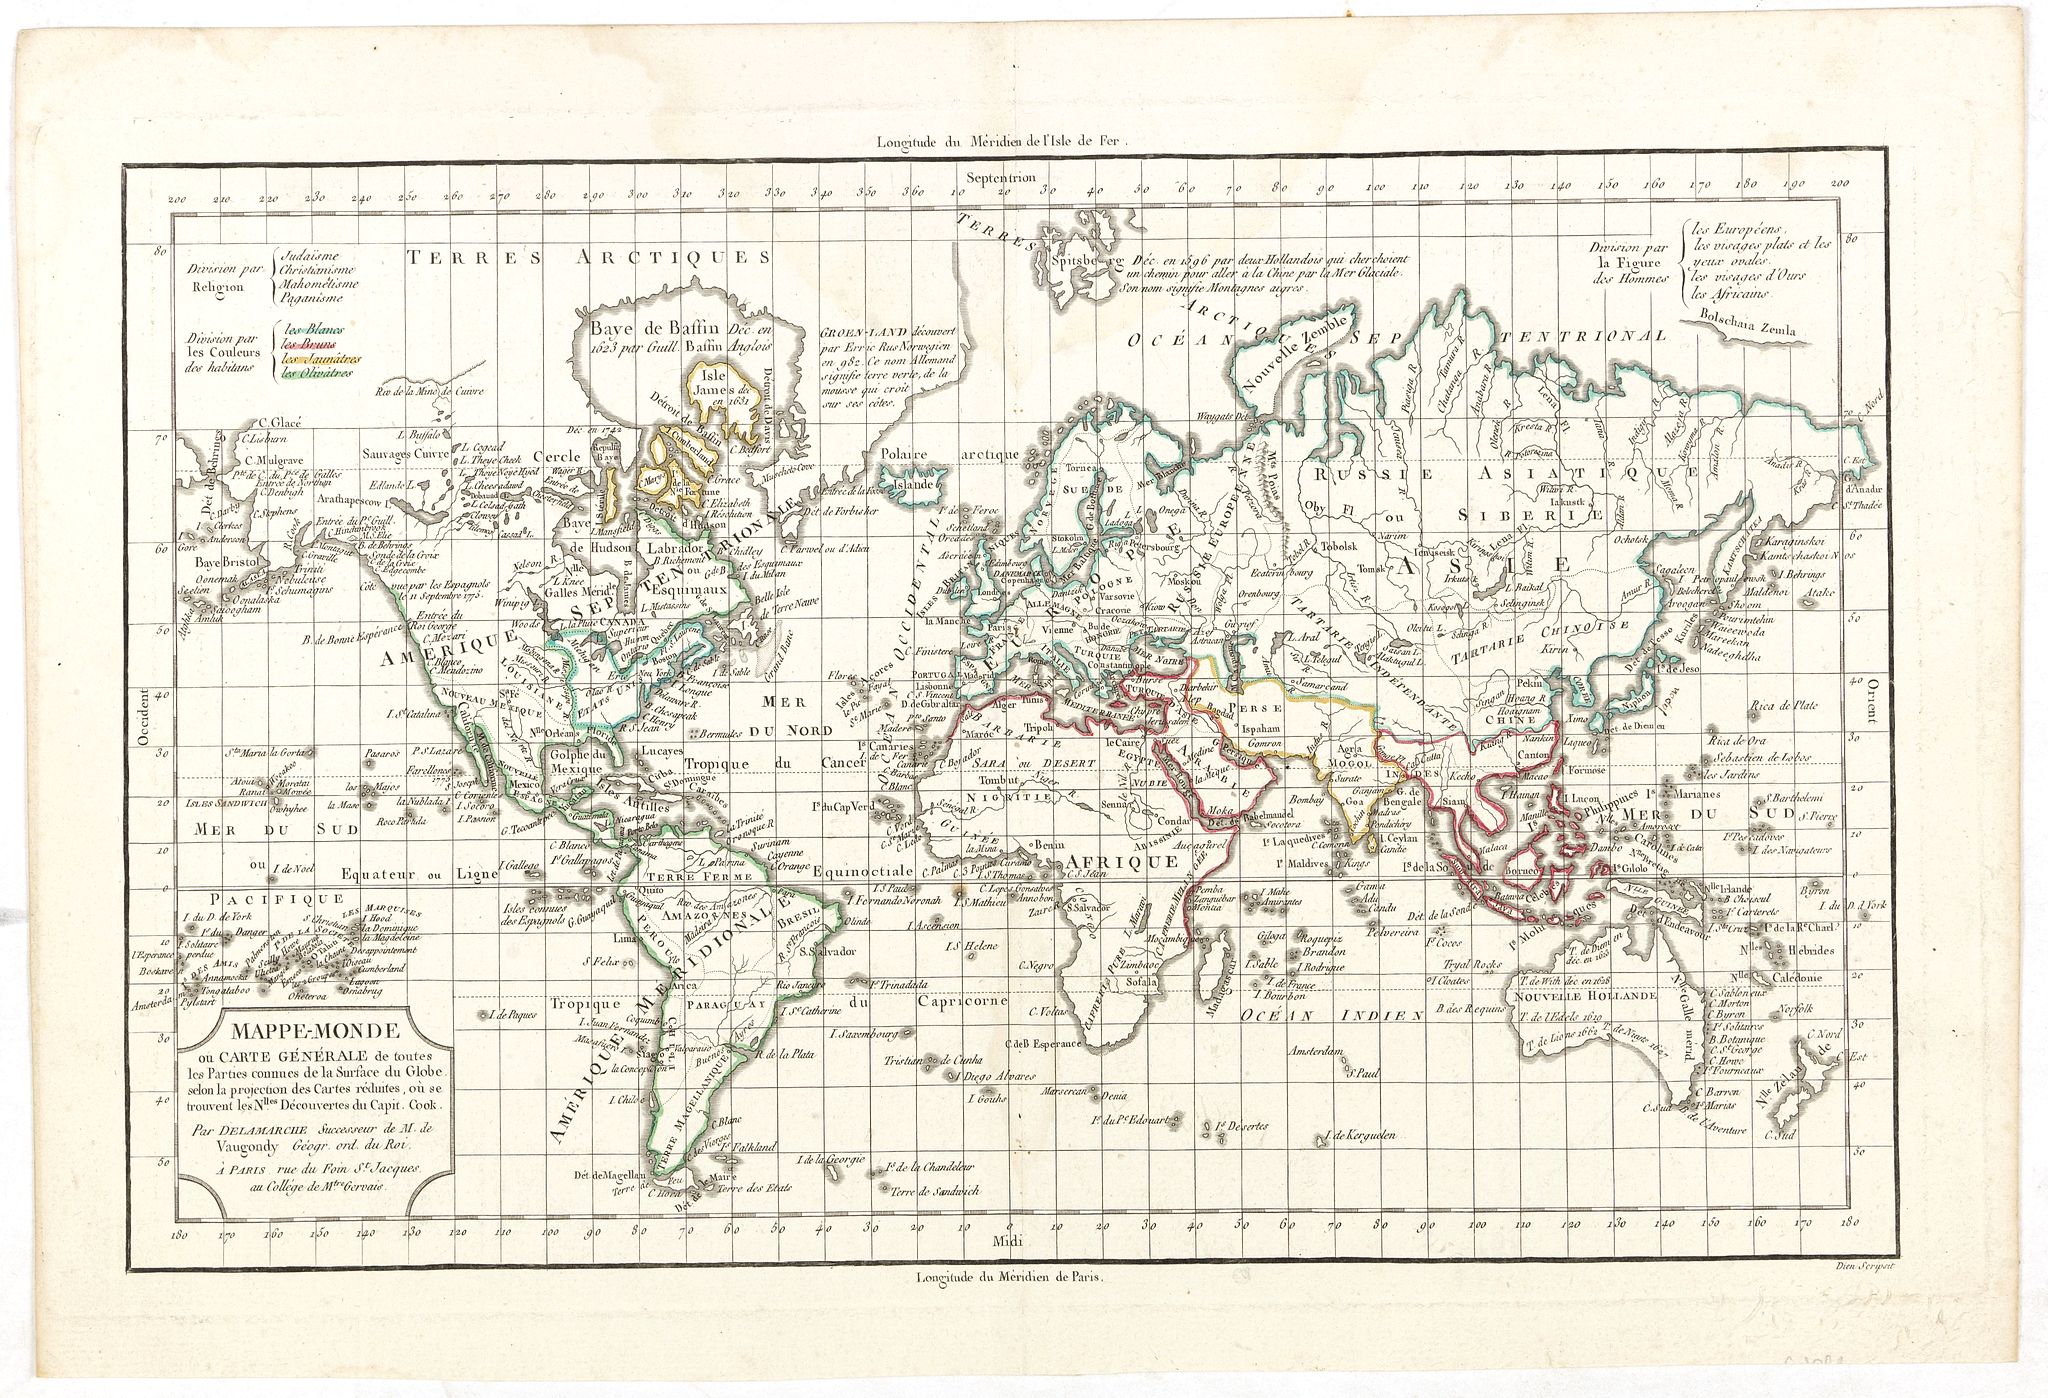 Mappe-Monde ou Carte Generale de toutes les Parties connues